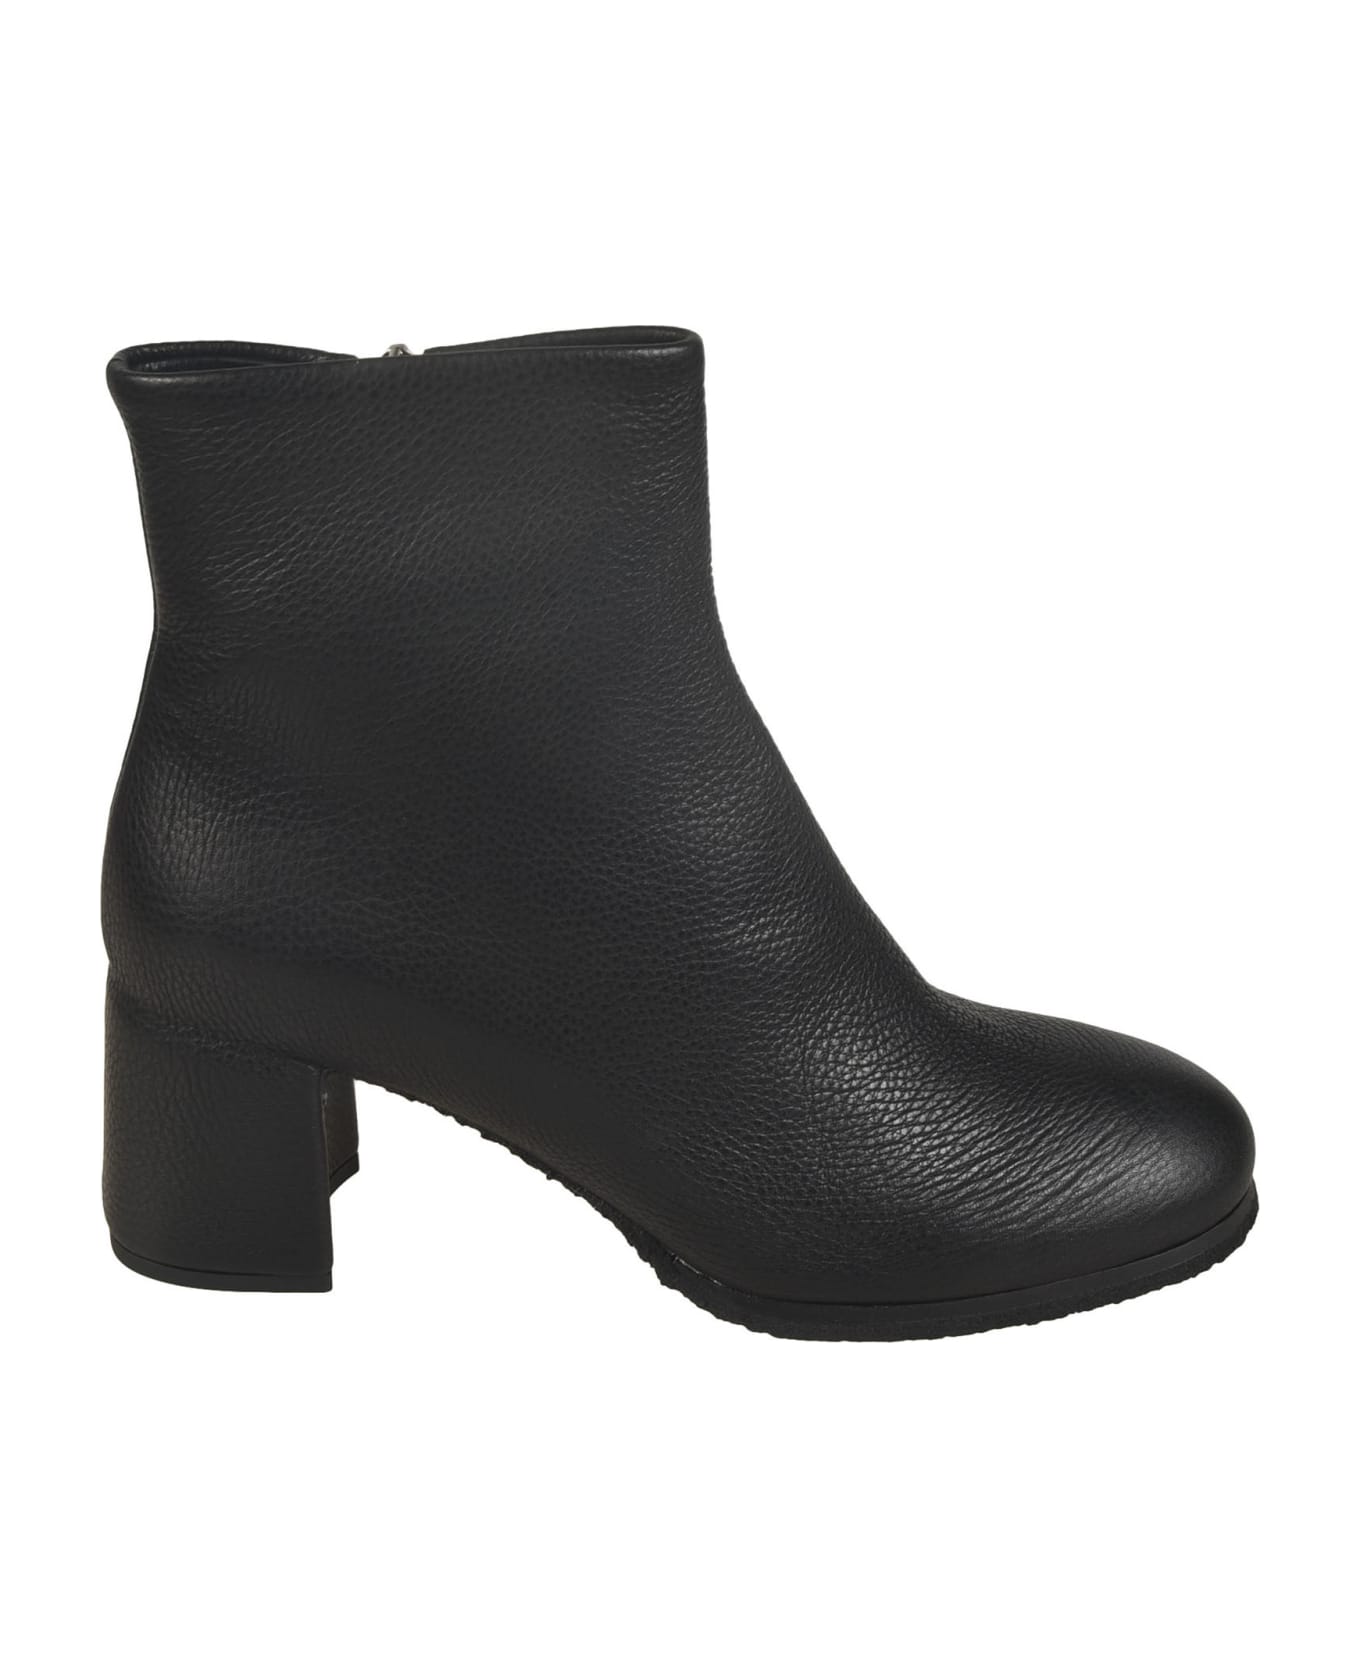 Del Carlo Side Zip Boots - Black ブーツ